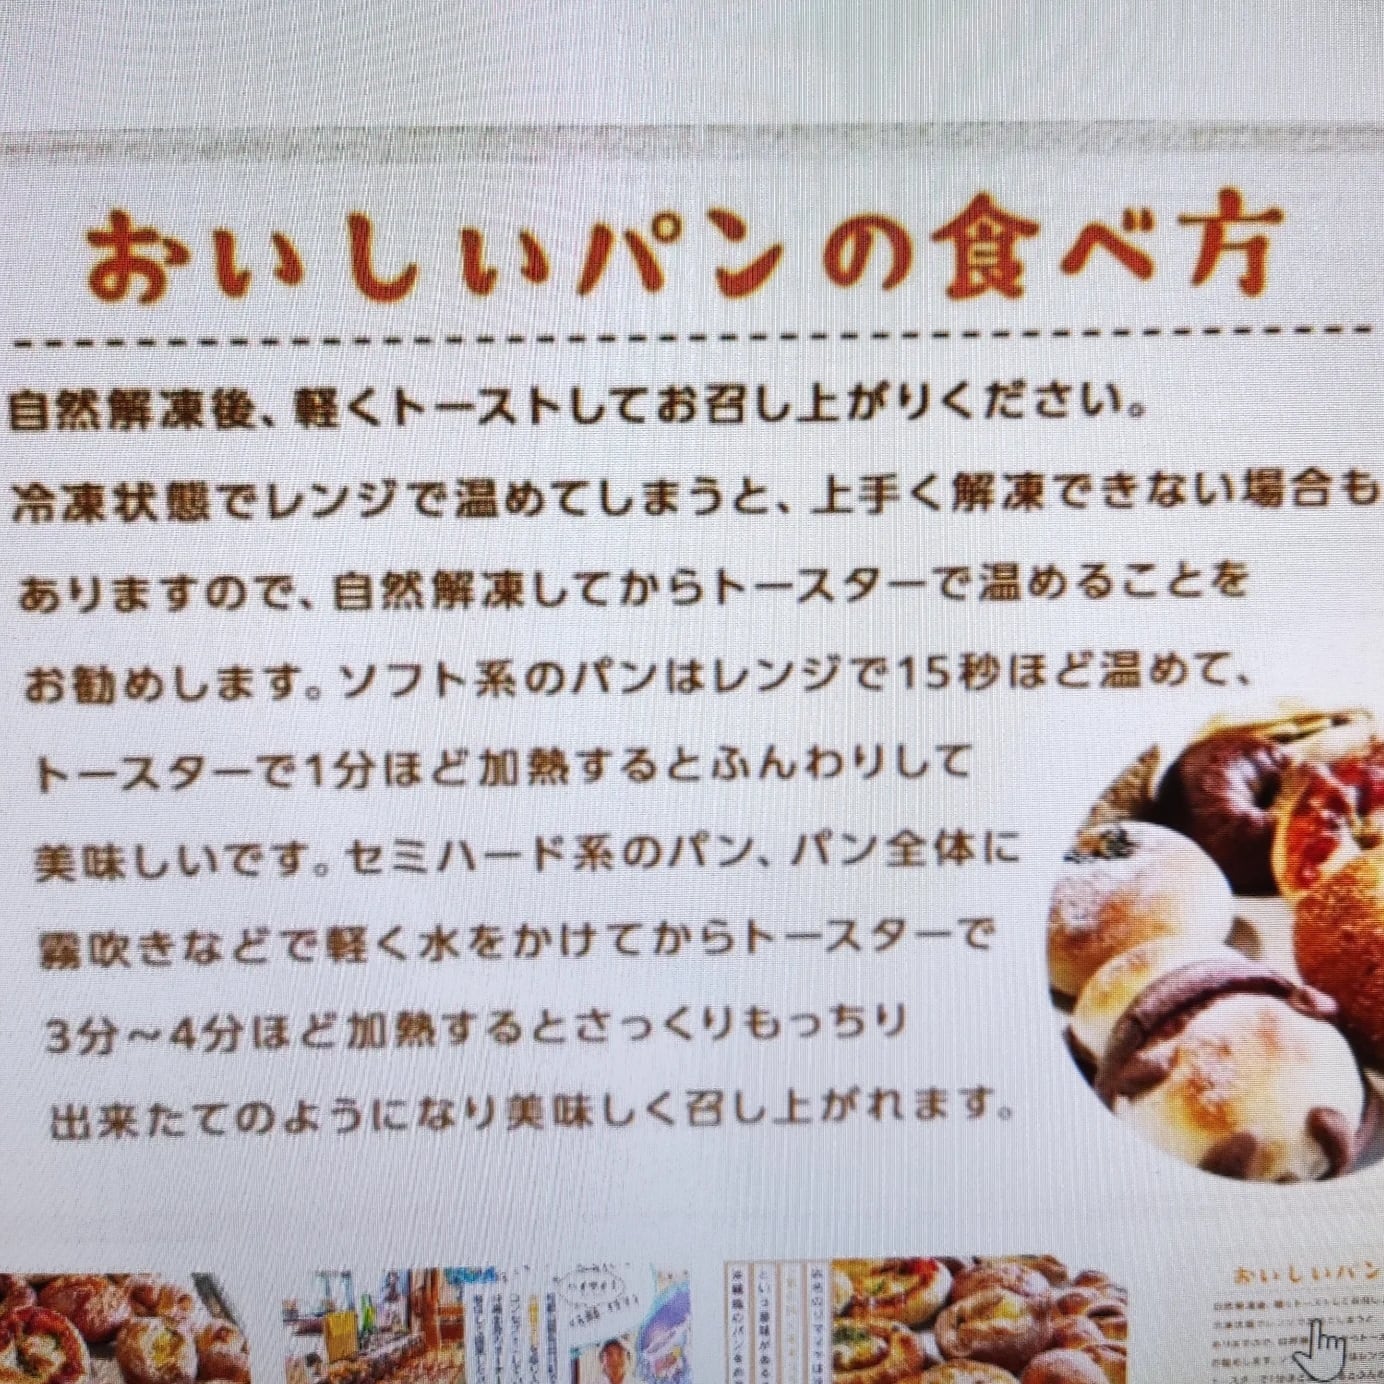 「わけあり」沖縄の食文化を取り入れた、ジママヤベーカリーのロスパンセット80サイズ